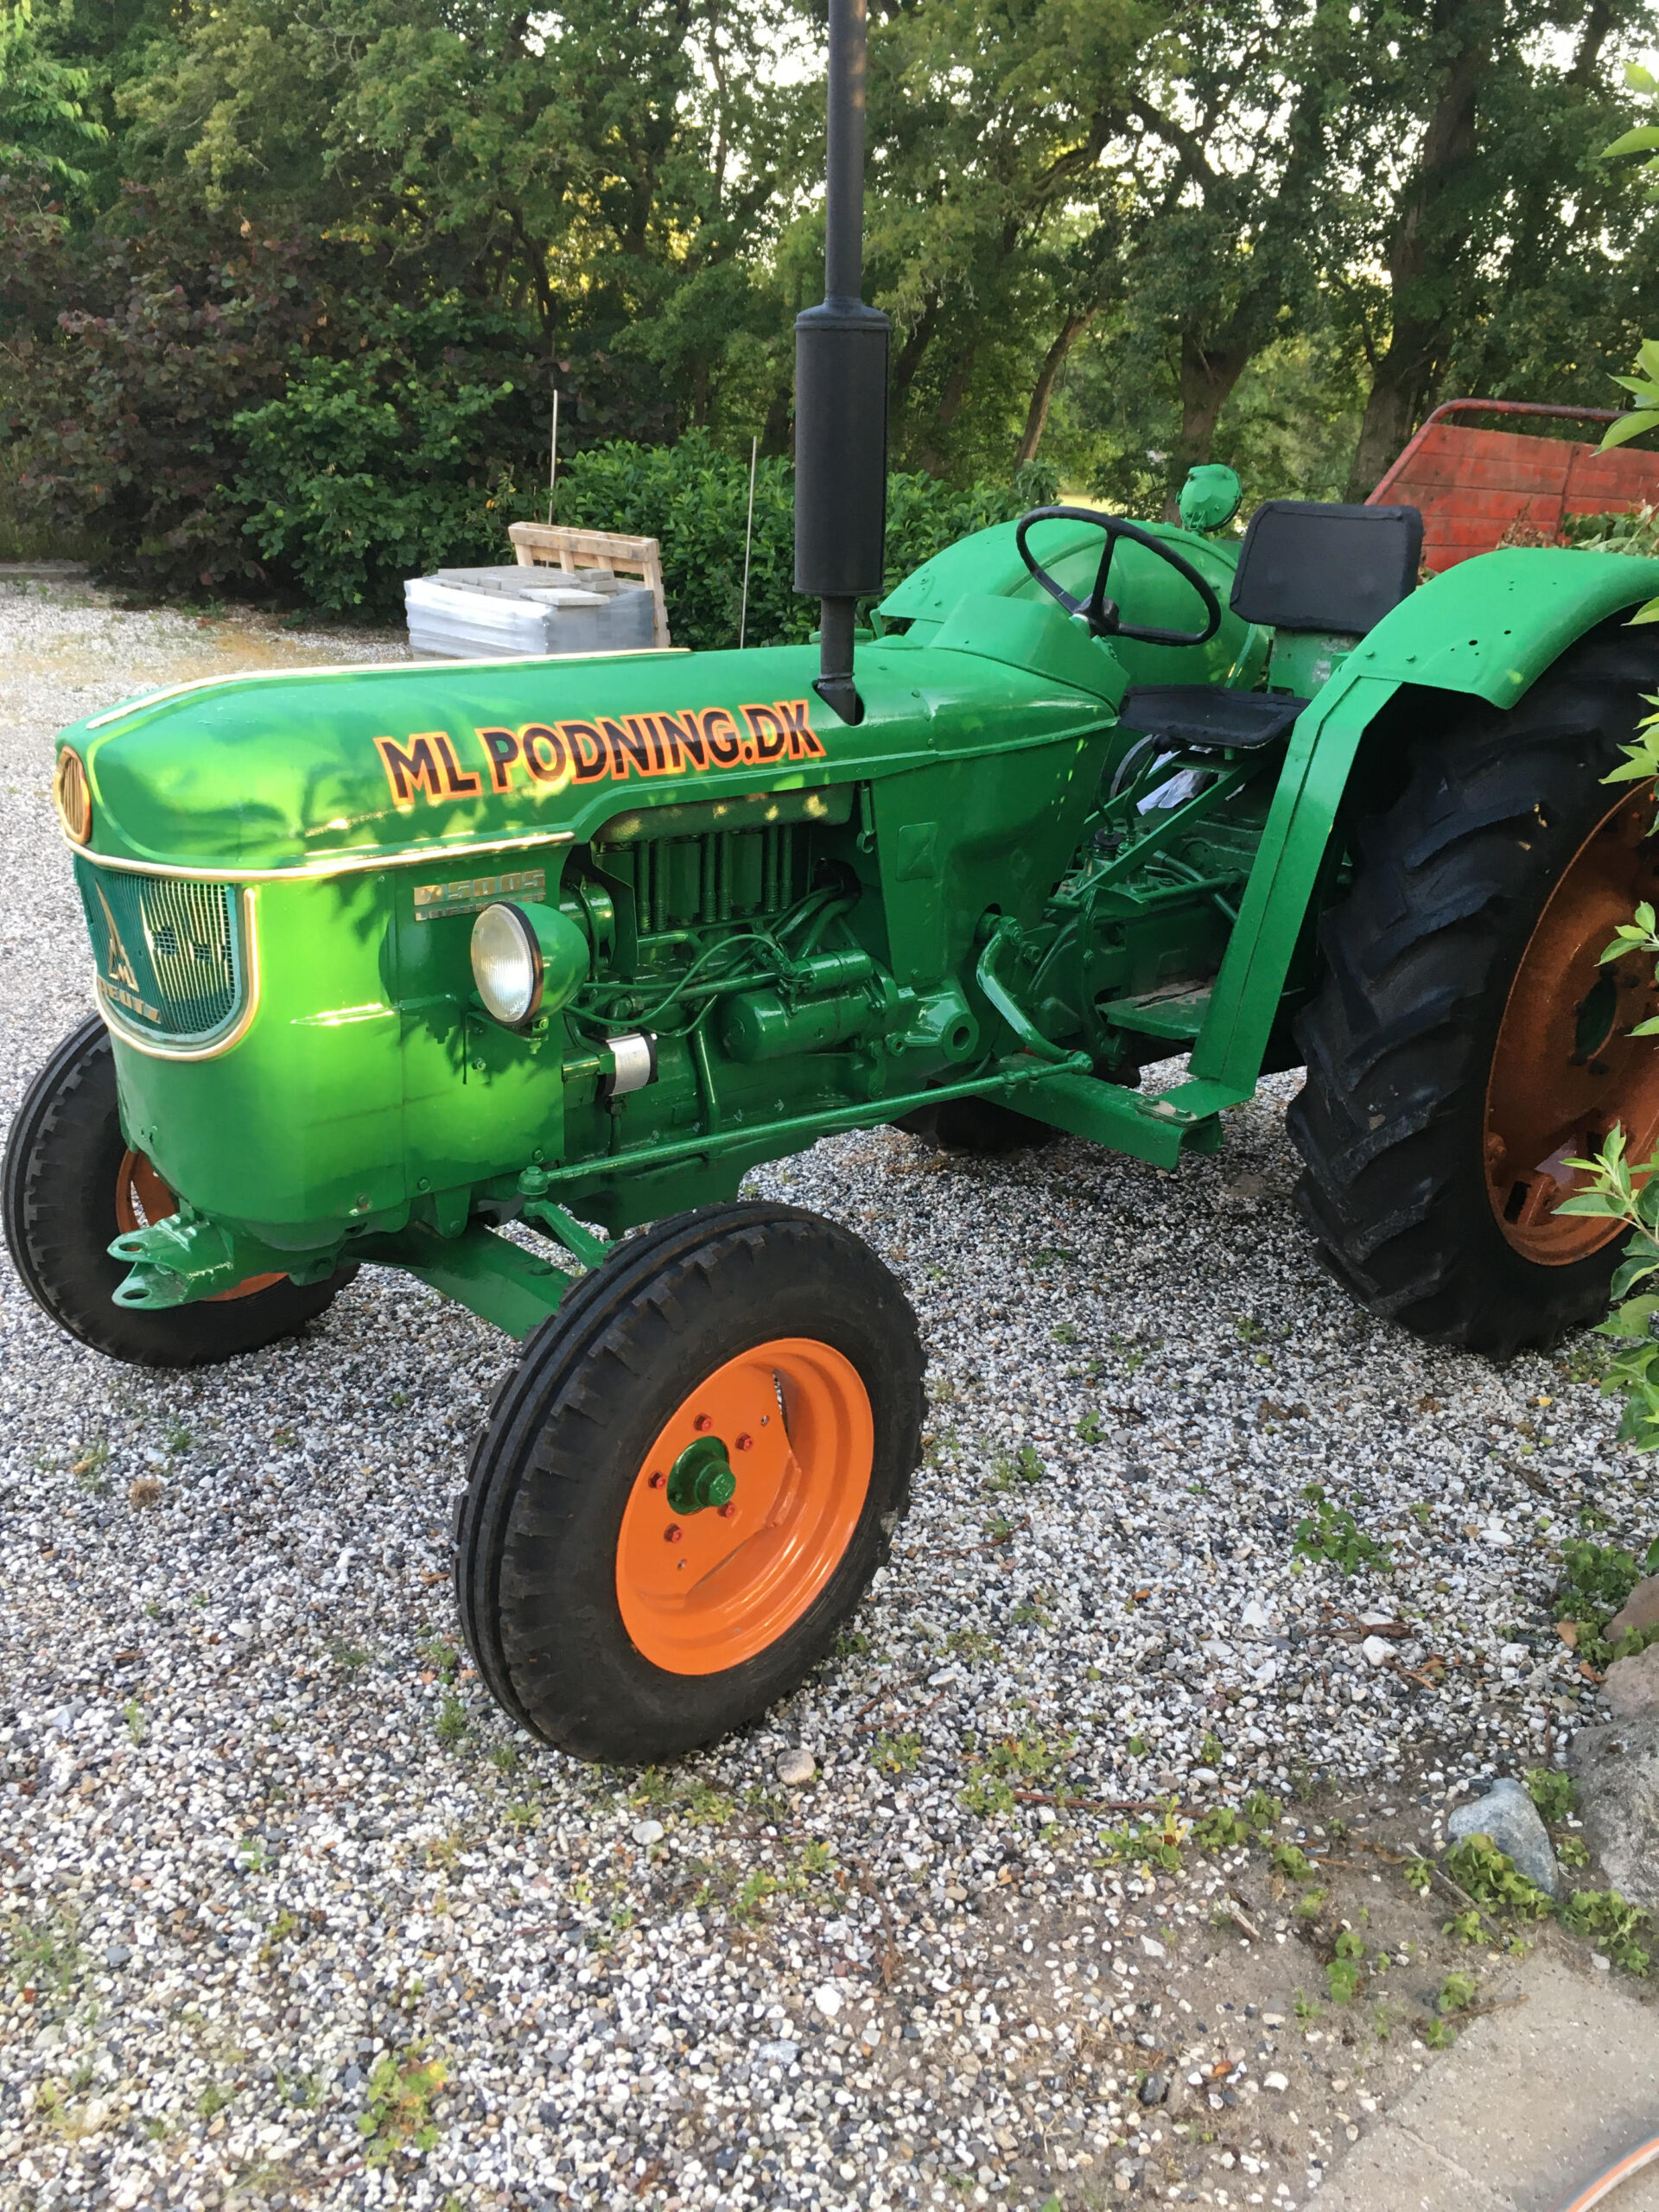 Ny istandsat traktor til planteskolen.